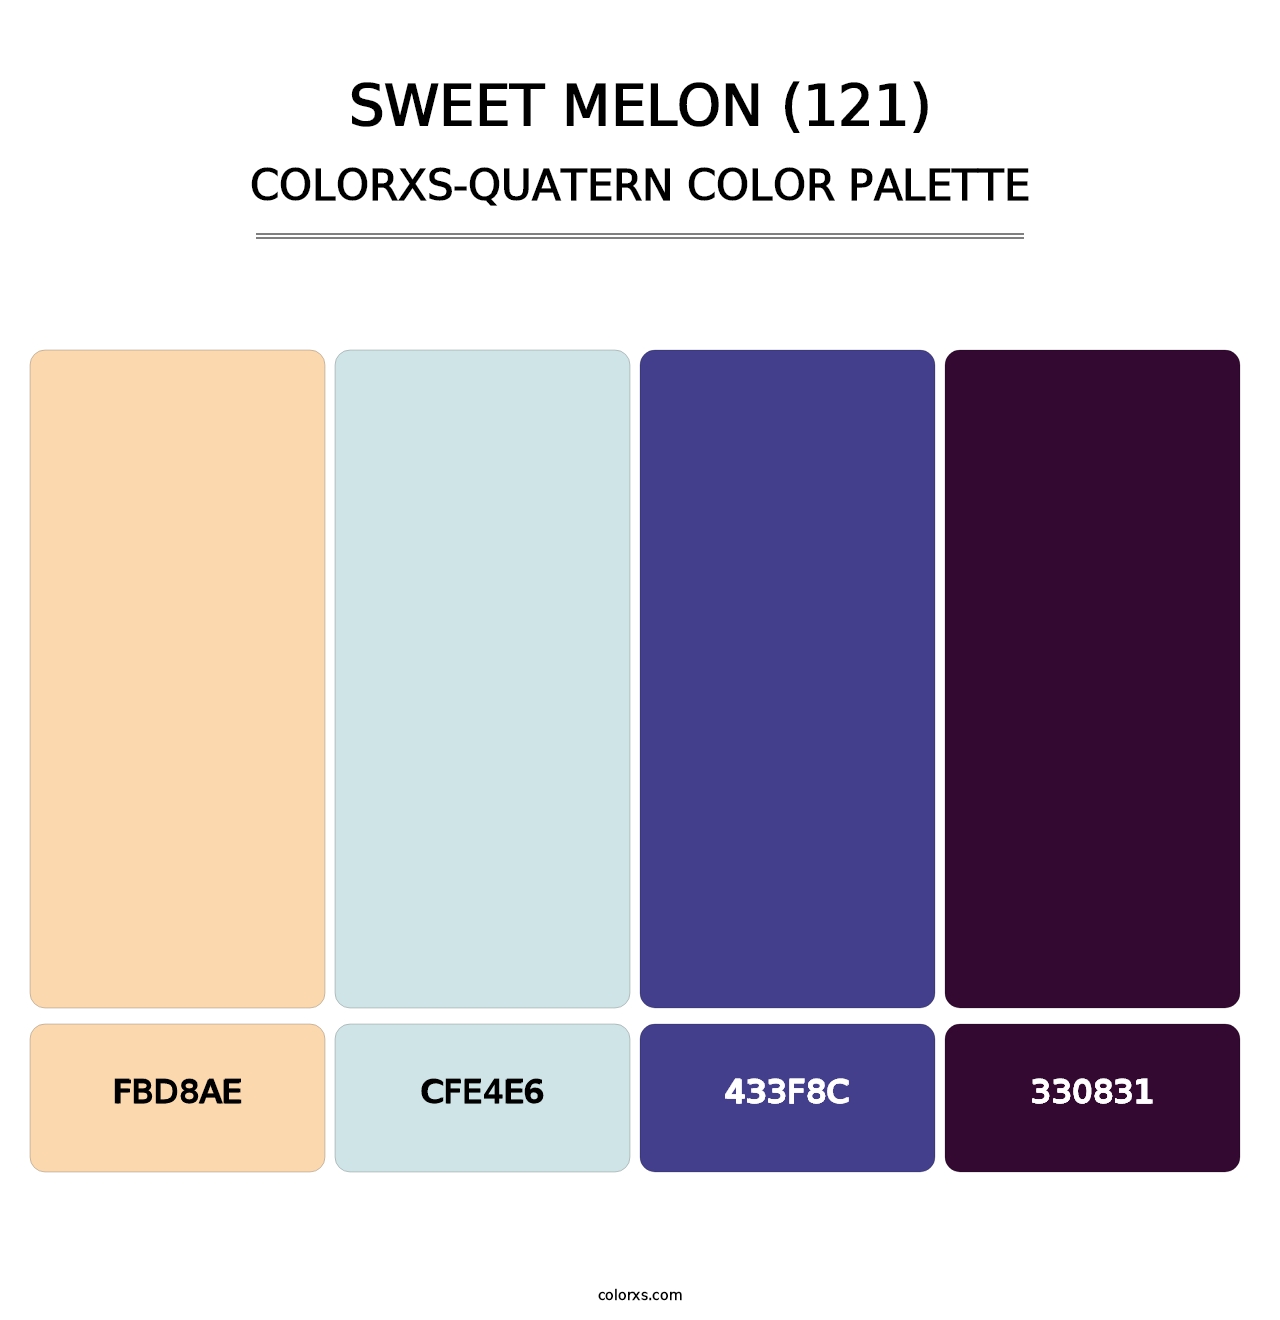 Sweet Melon (121) - Colorxs Quatern Palette